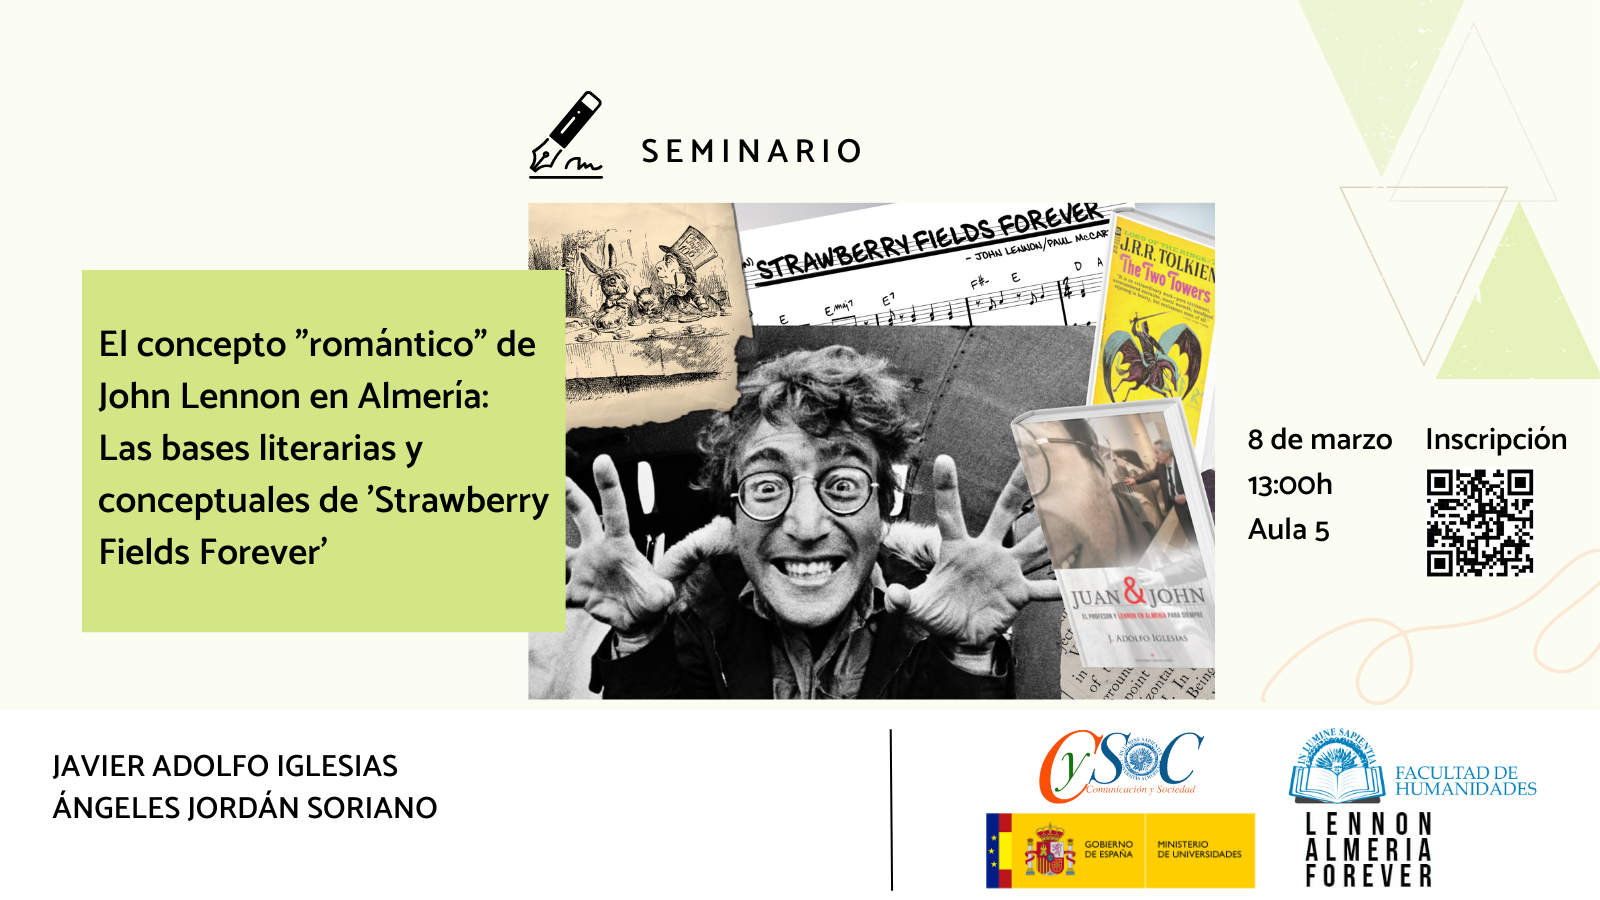 La Facultad de Humanidades y Ángeles Jordán Soriano organizan el seminario «El concepto "romántico" de John Lennon en Almería: Las bases literarias y conceptuales de 'Strawberry Fields Forever'».
